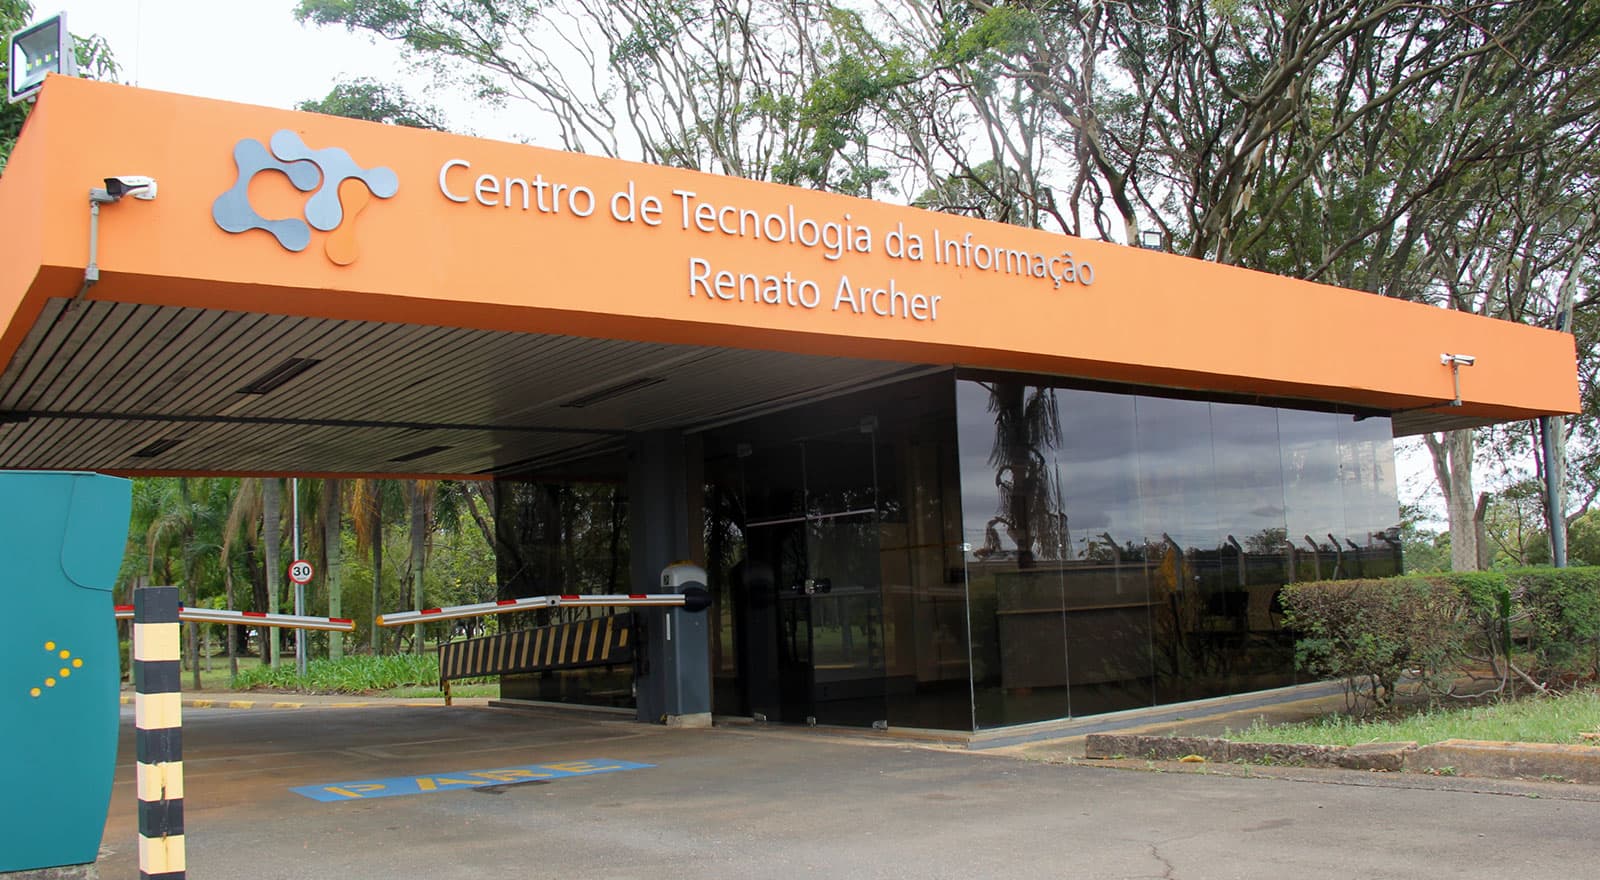 CTI - Centro de Tecnologia da Informação Renato Archer - Entrada